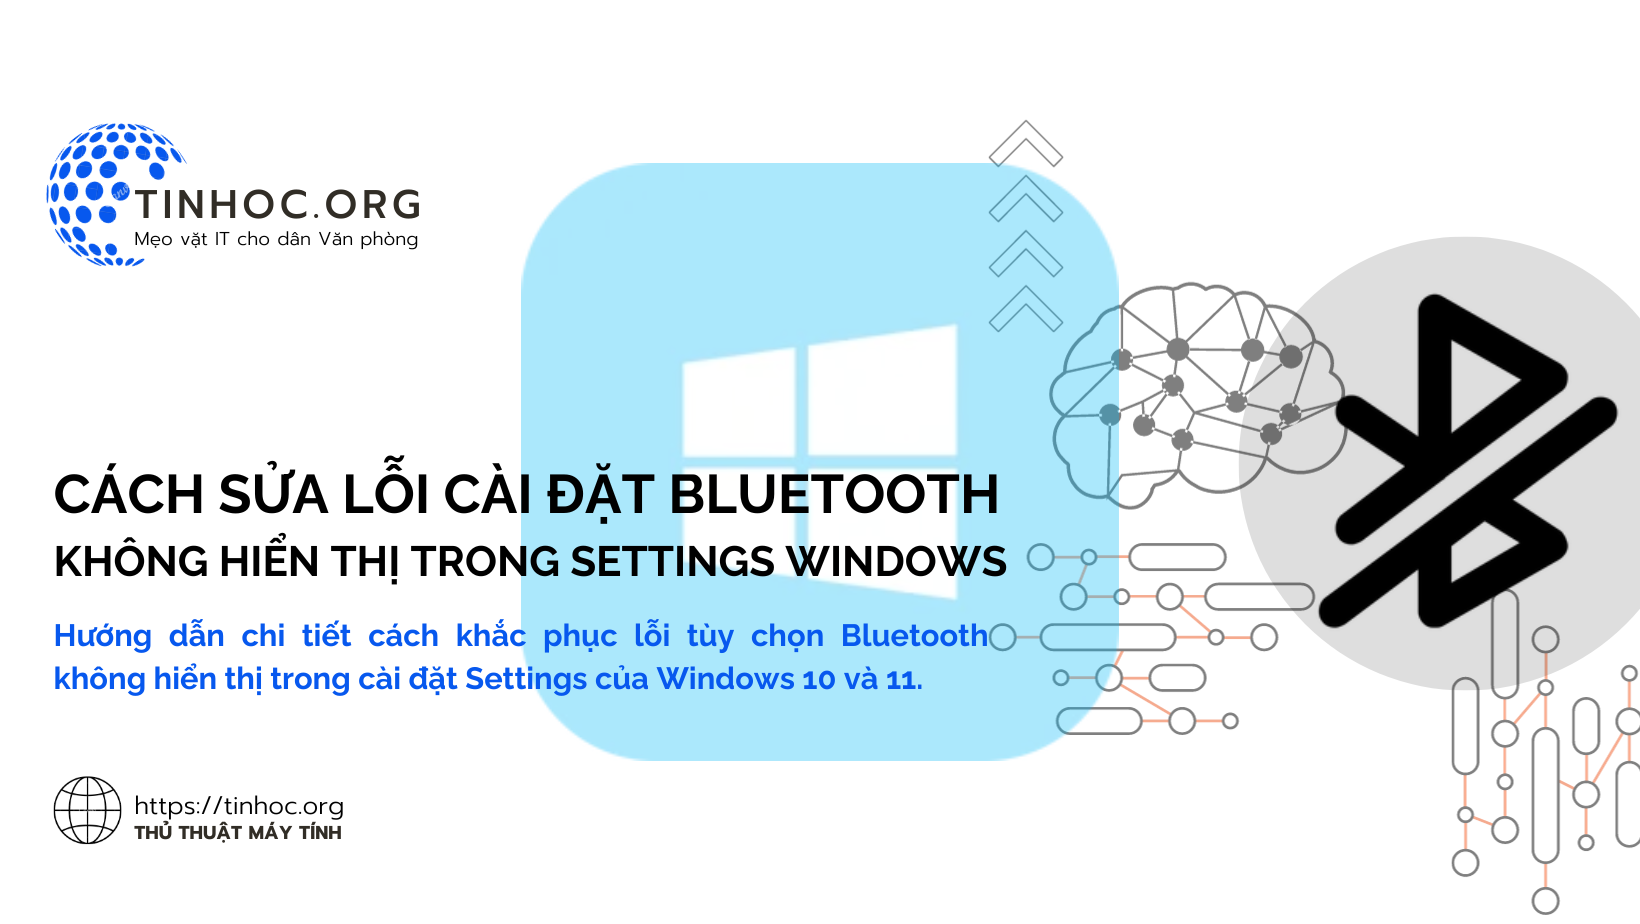 Hướng dẫn chi tiết cách khắc phục lỗi tùy chọn Bluetooth không hiển thị trong cài đặt Settings của Windows 10 và 11.